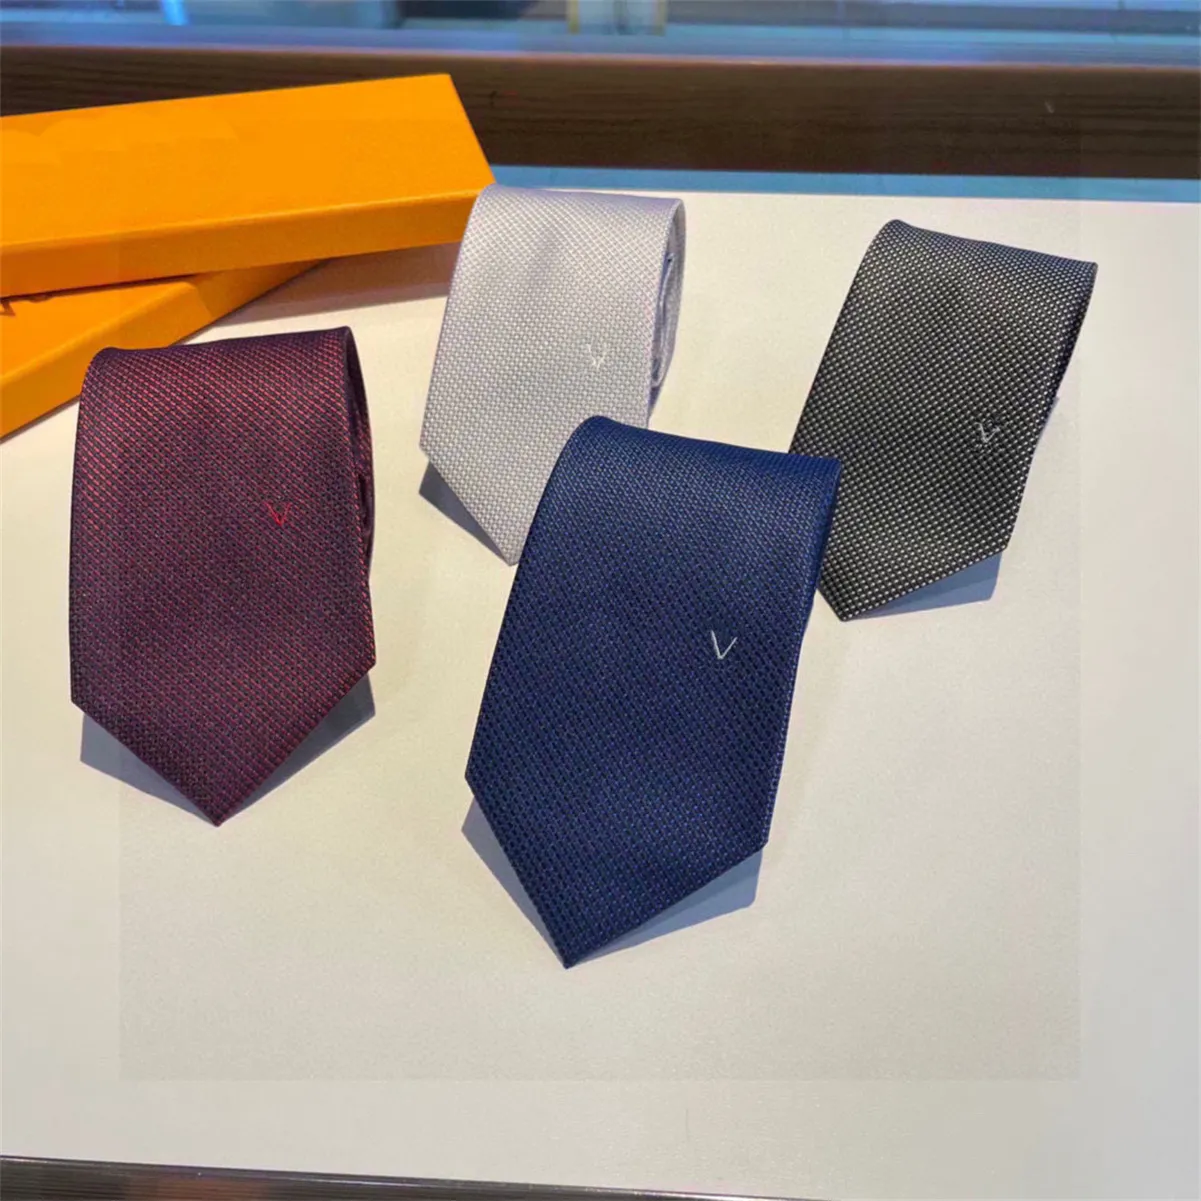 Designer de haute qualité Cravate avec boîte Hommes Cravate Design Hommes Cravates Mode Cravate Rayures Motif Broderie Luxurys Designers Cravates d'affaires boîte